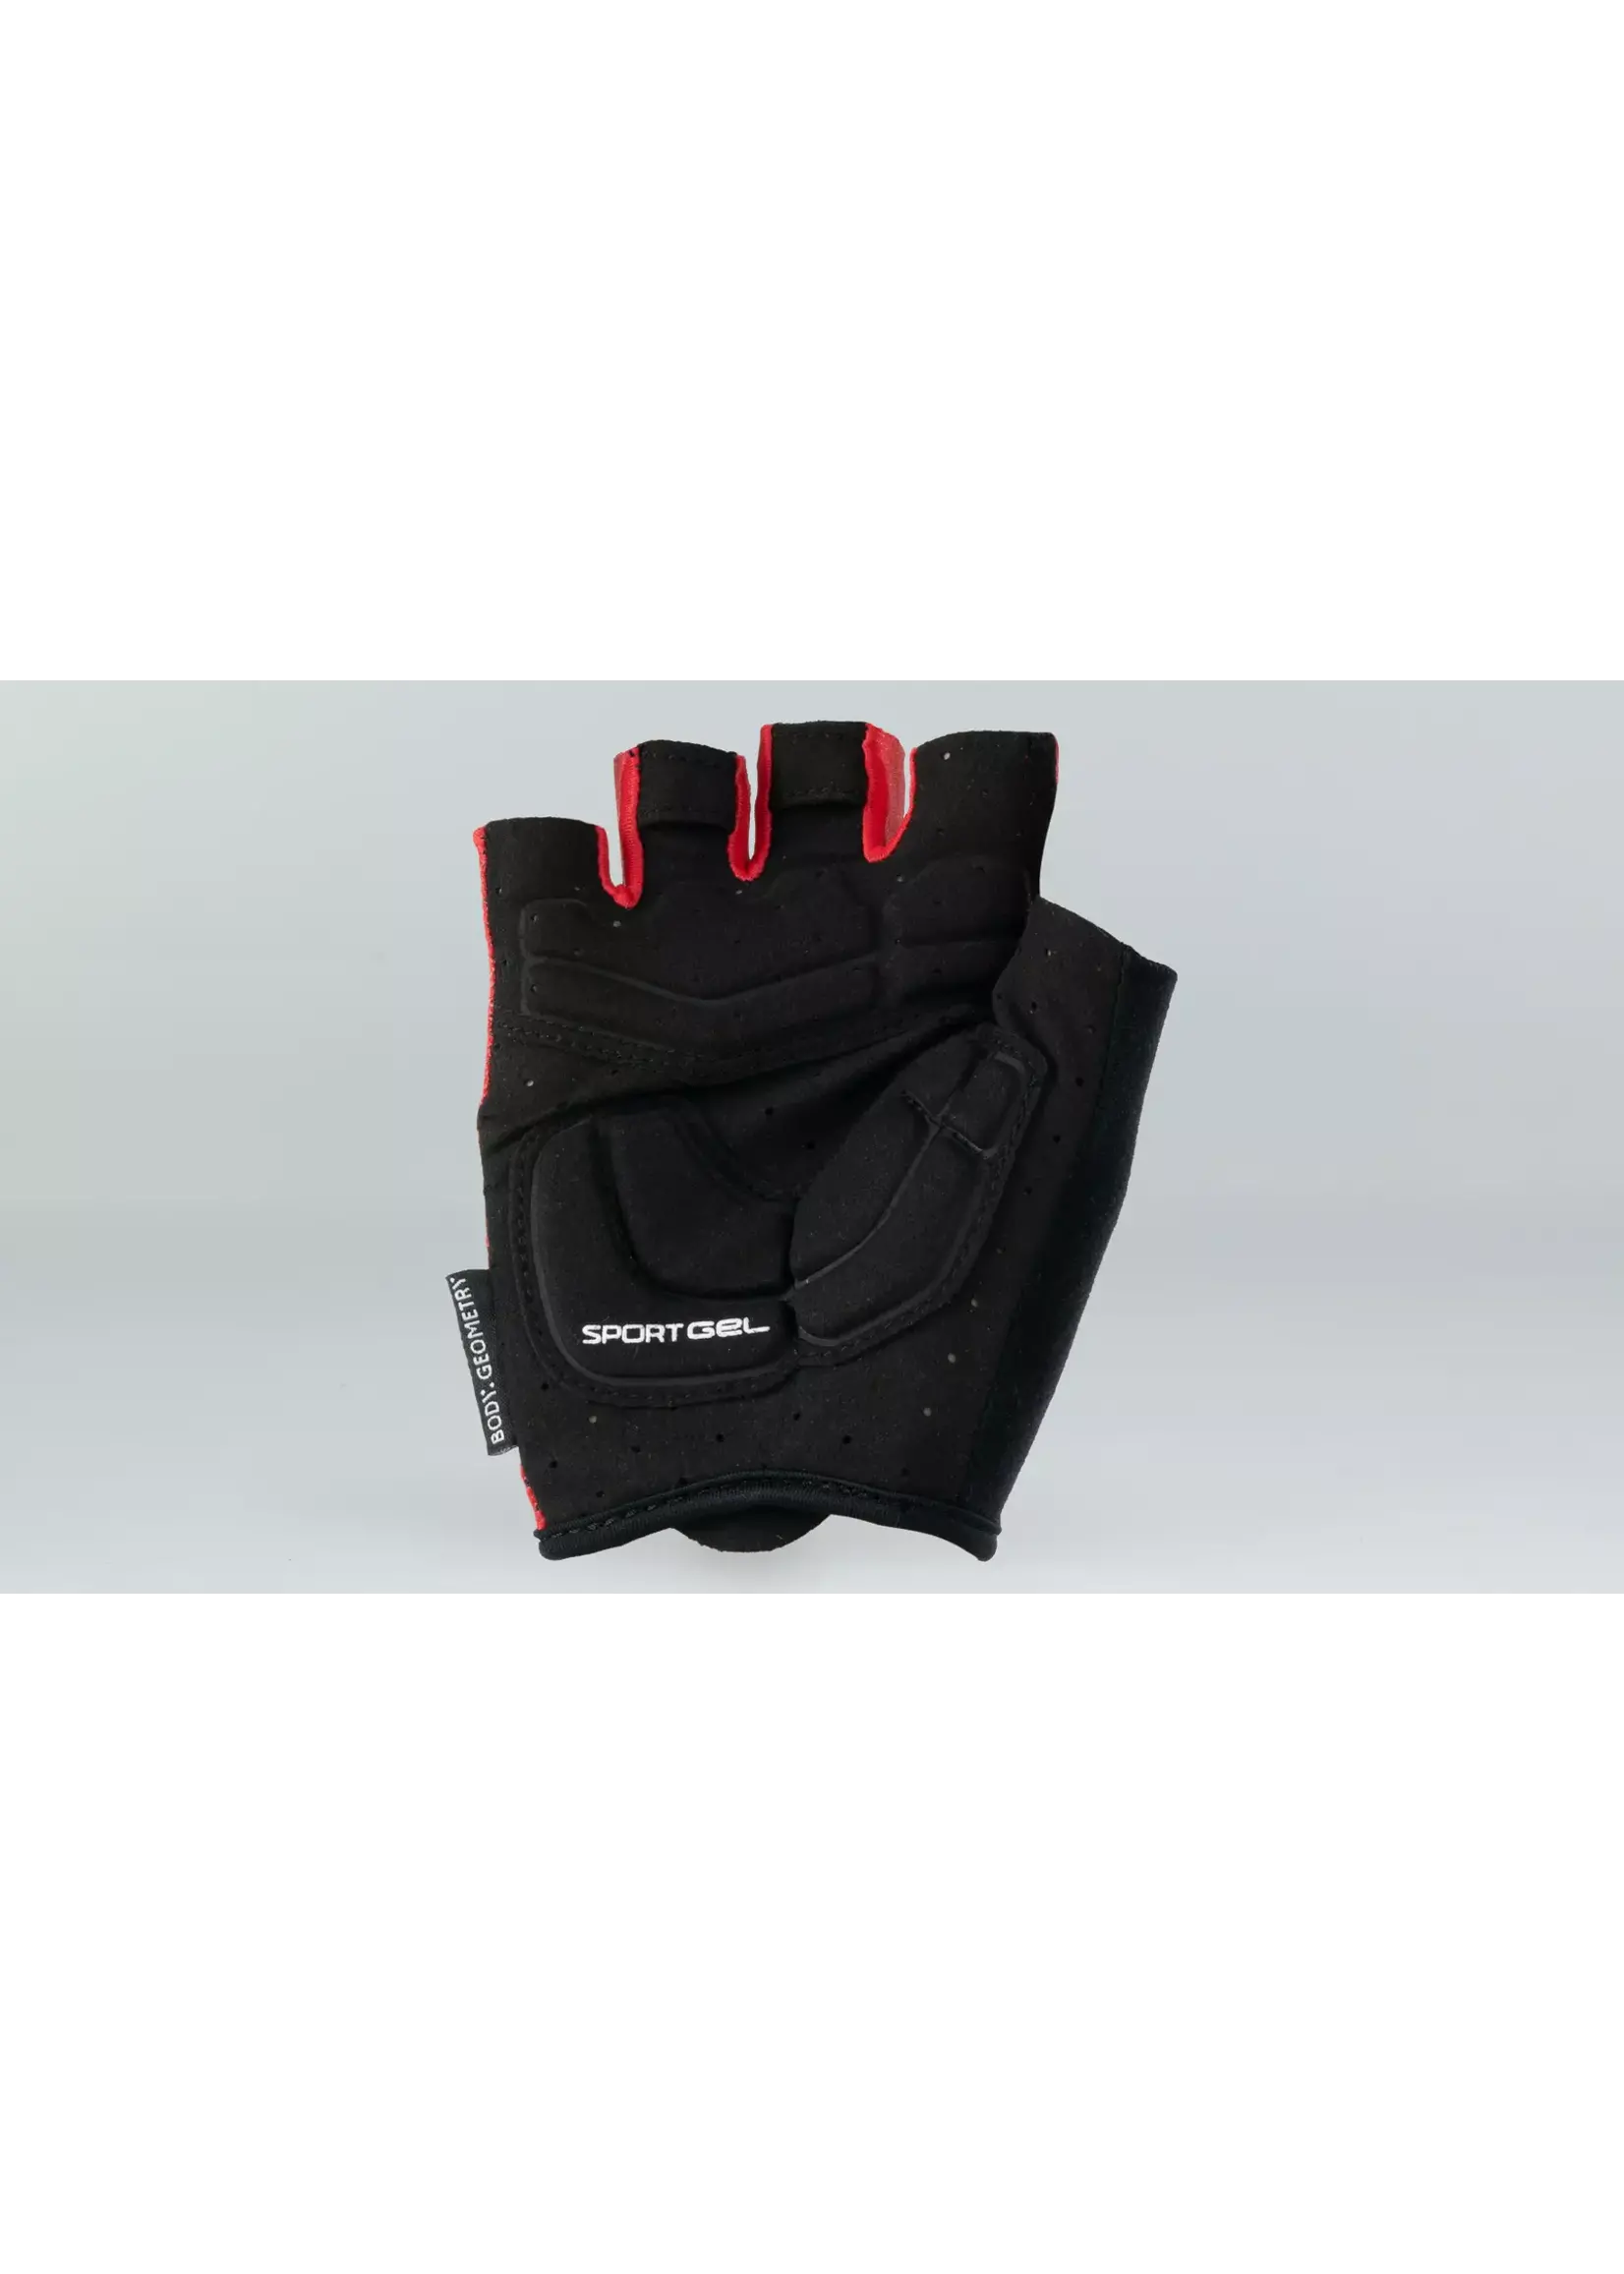 Specialized Specialized W's Body Geometry Sport Gel Gloves